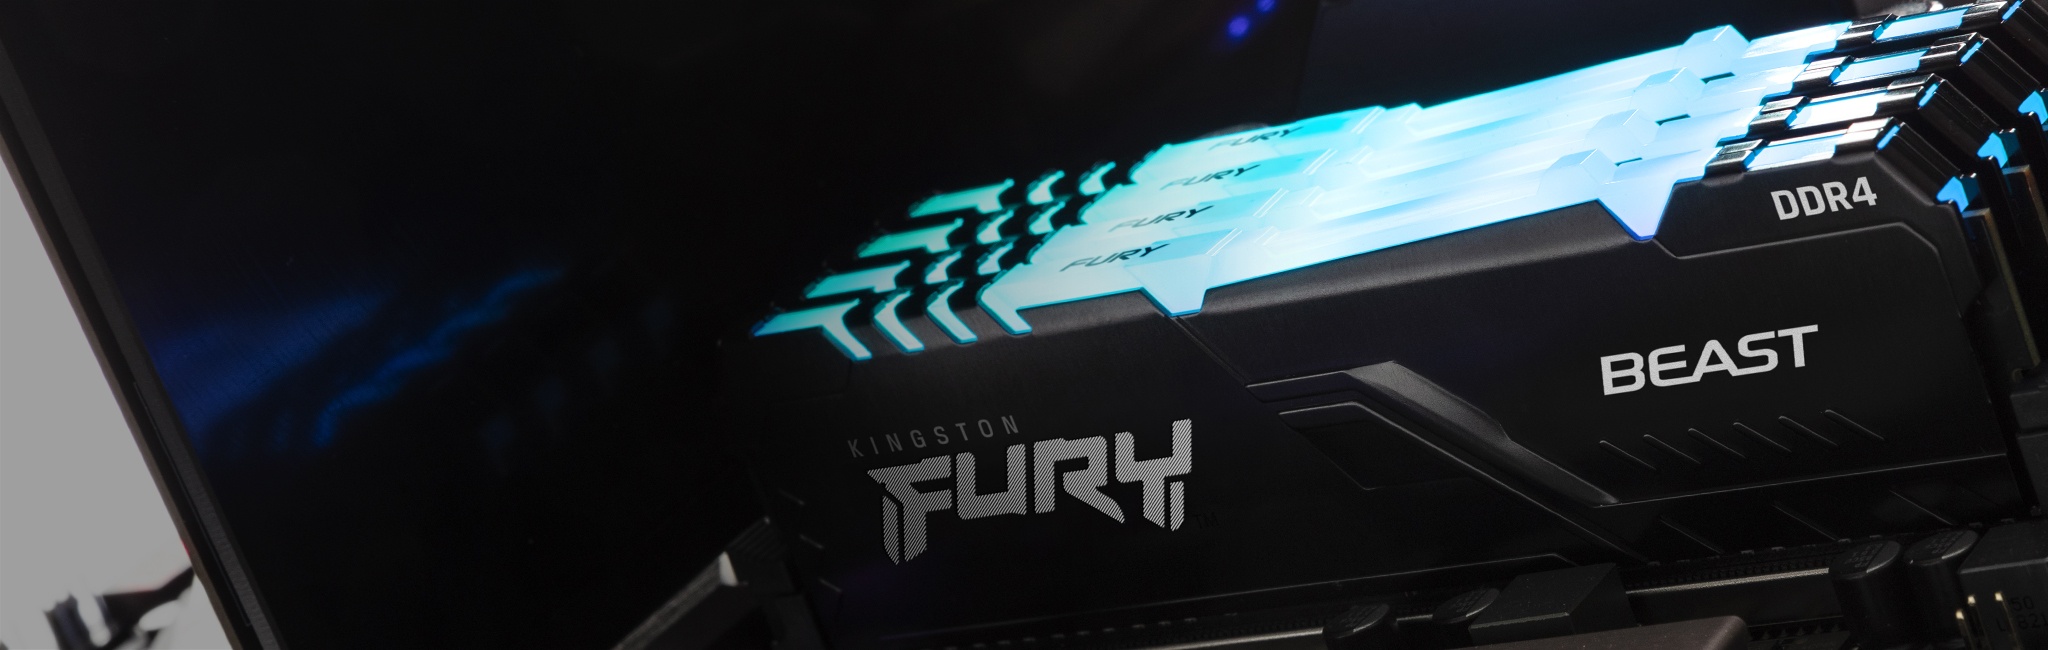 Mémoire FURY Beast RGB de Kingston installée dans un PC avec une lueur bleue sur le module.